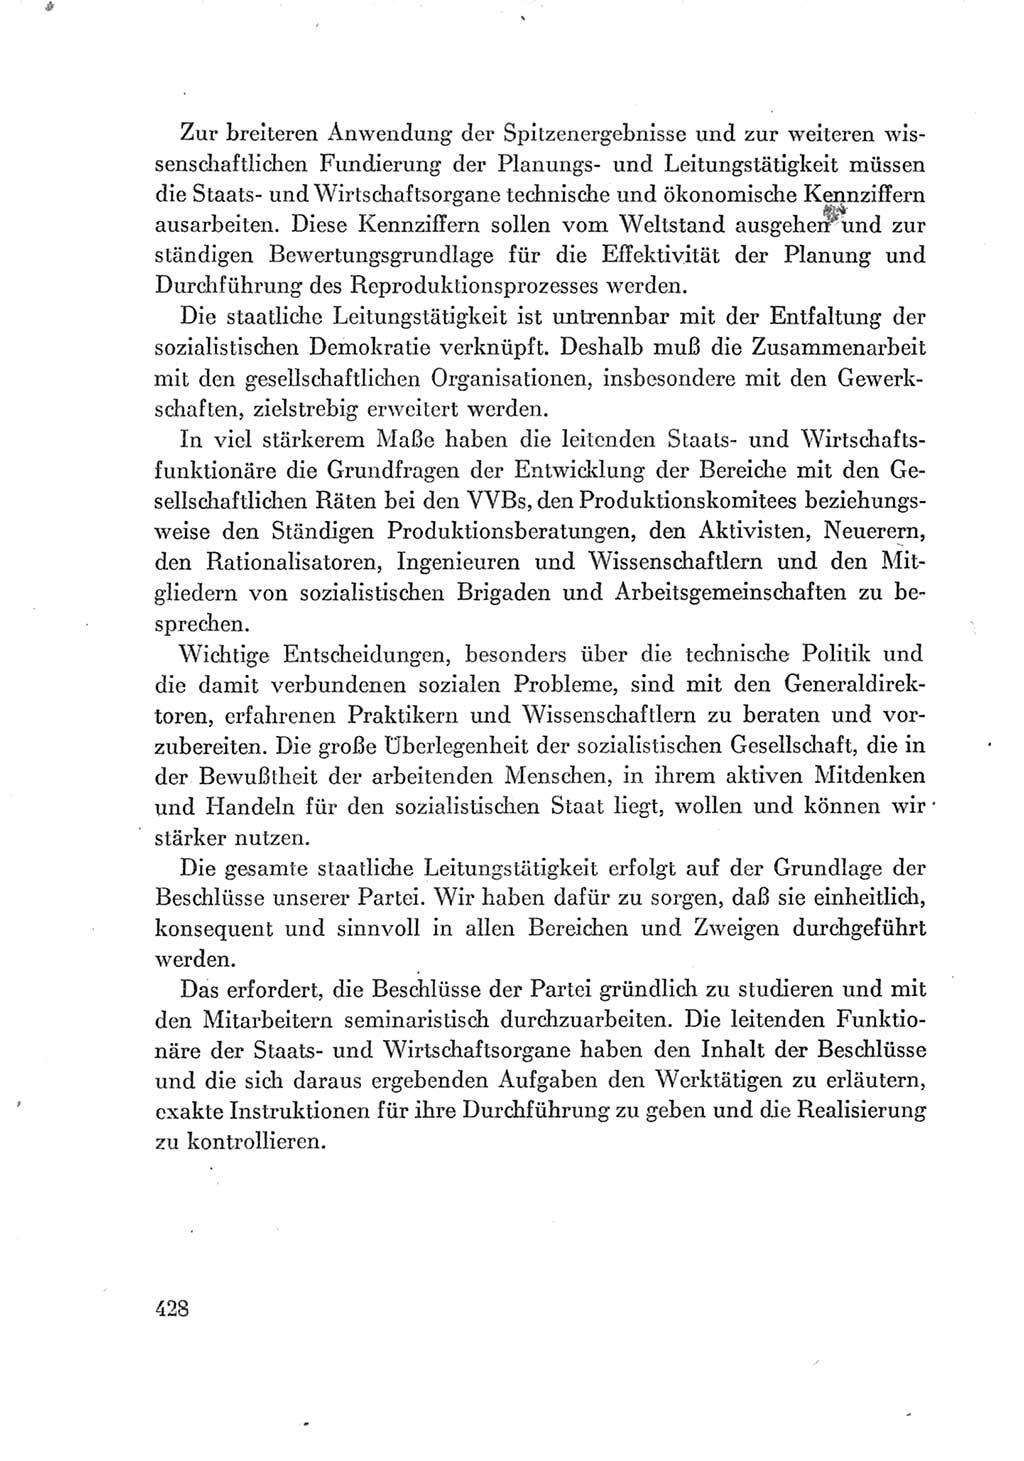 Protokoll der Verhandlungen des Ⅶ. Parteitages der Sozialistischen Einheitspartei Deutschlands (SED) [Deutsche Demokratische Republik (DDR)] 1967, Band Ⅰ, Seite 428 (Prot. Verh. Ⅶ. PT SED DDR 1967, Bd. Ⅰ, S. 428)